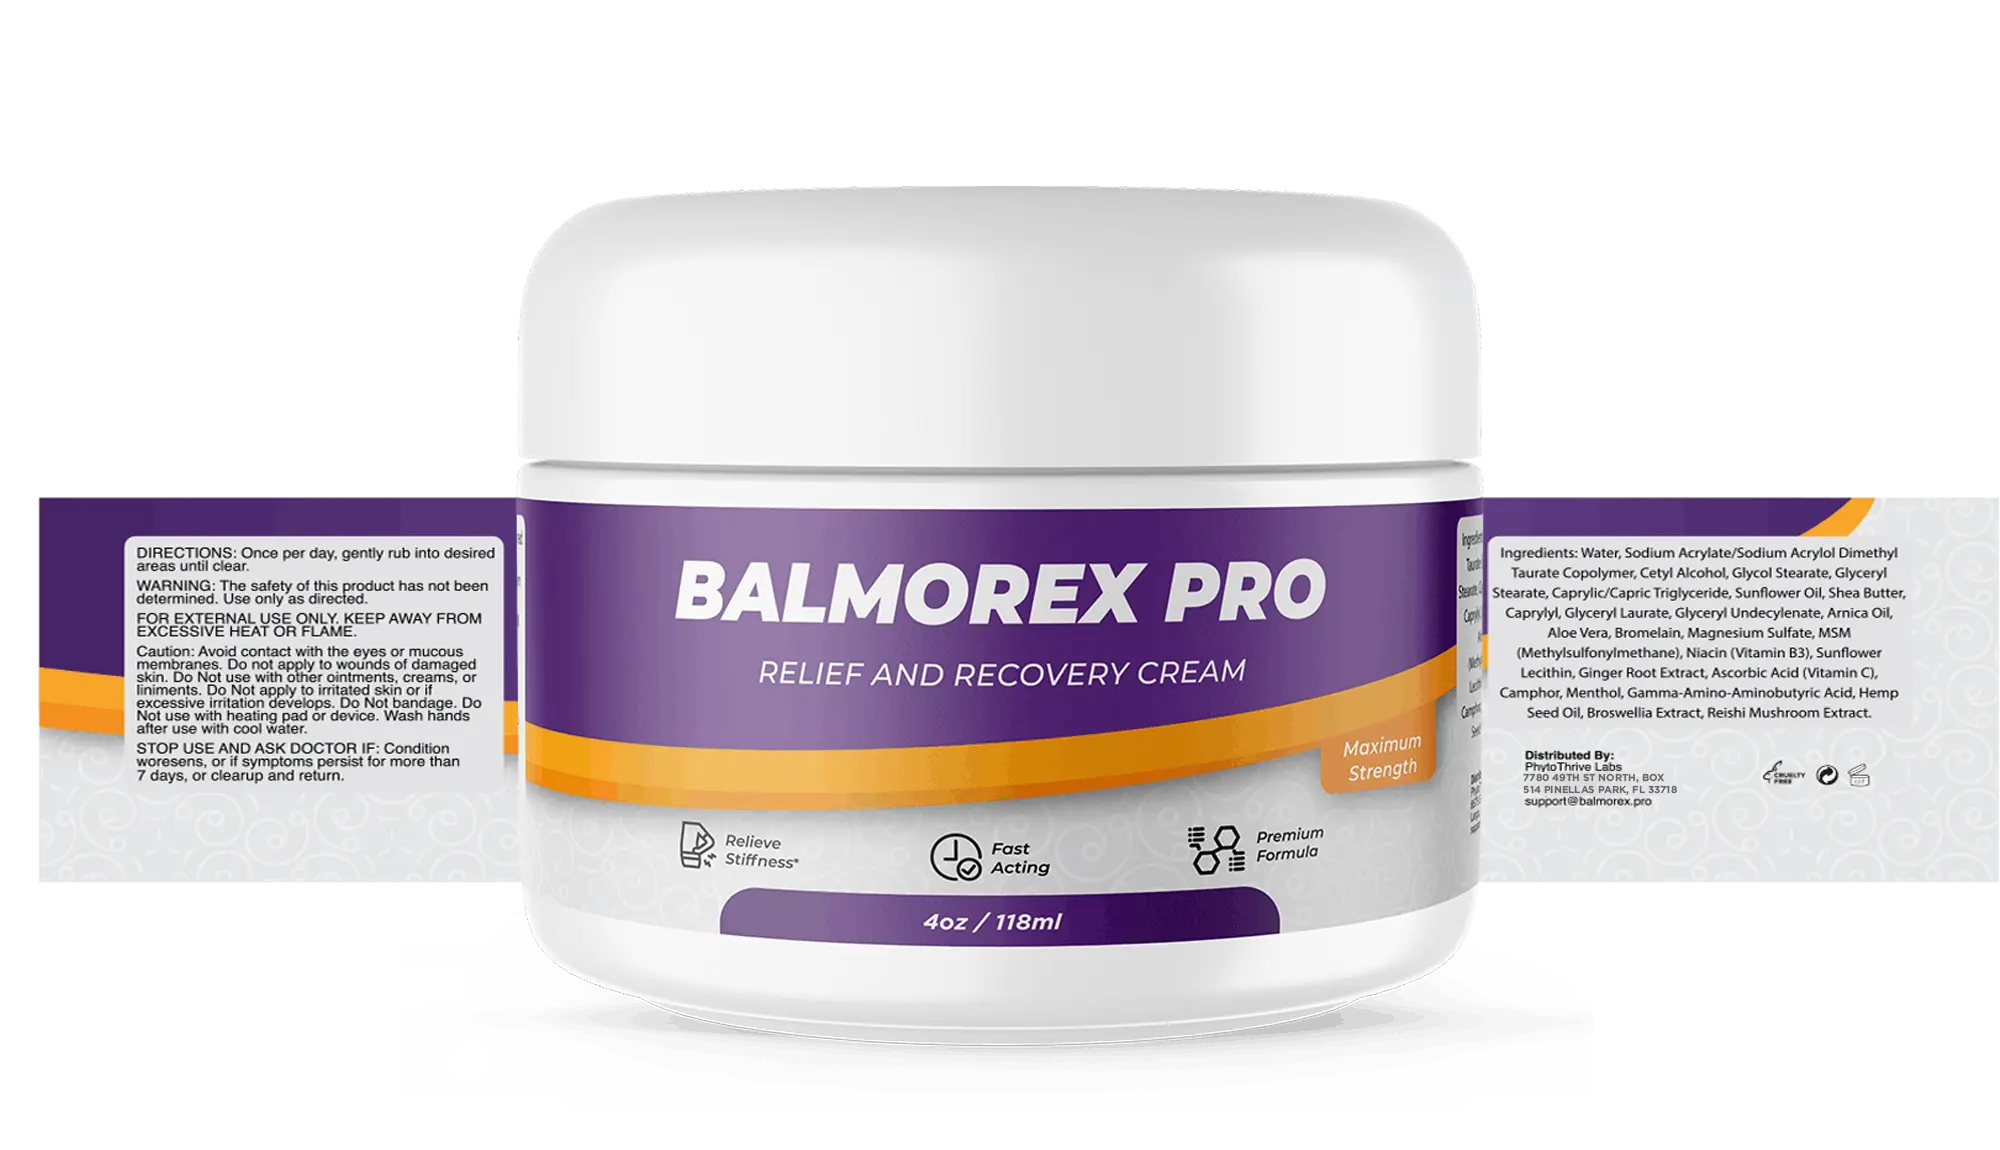 Balmorex Pro label